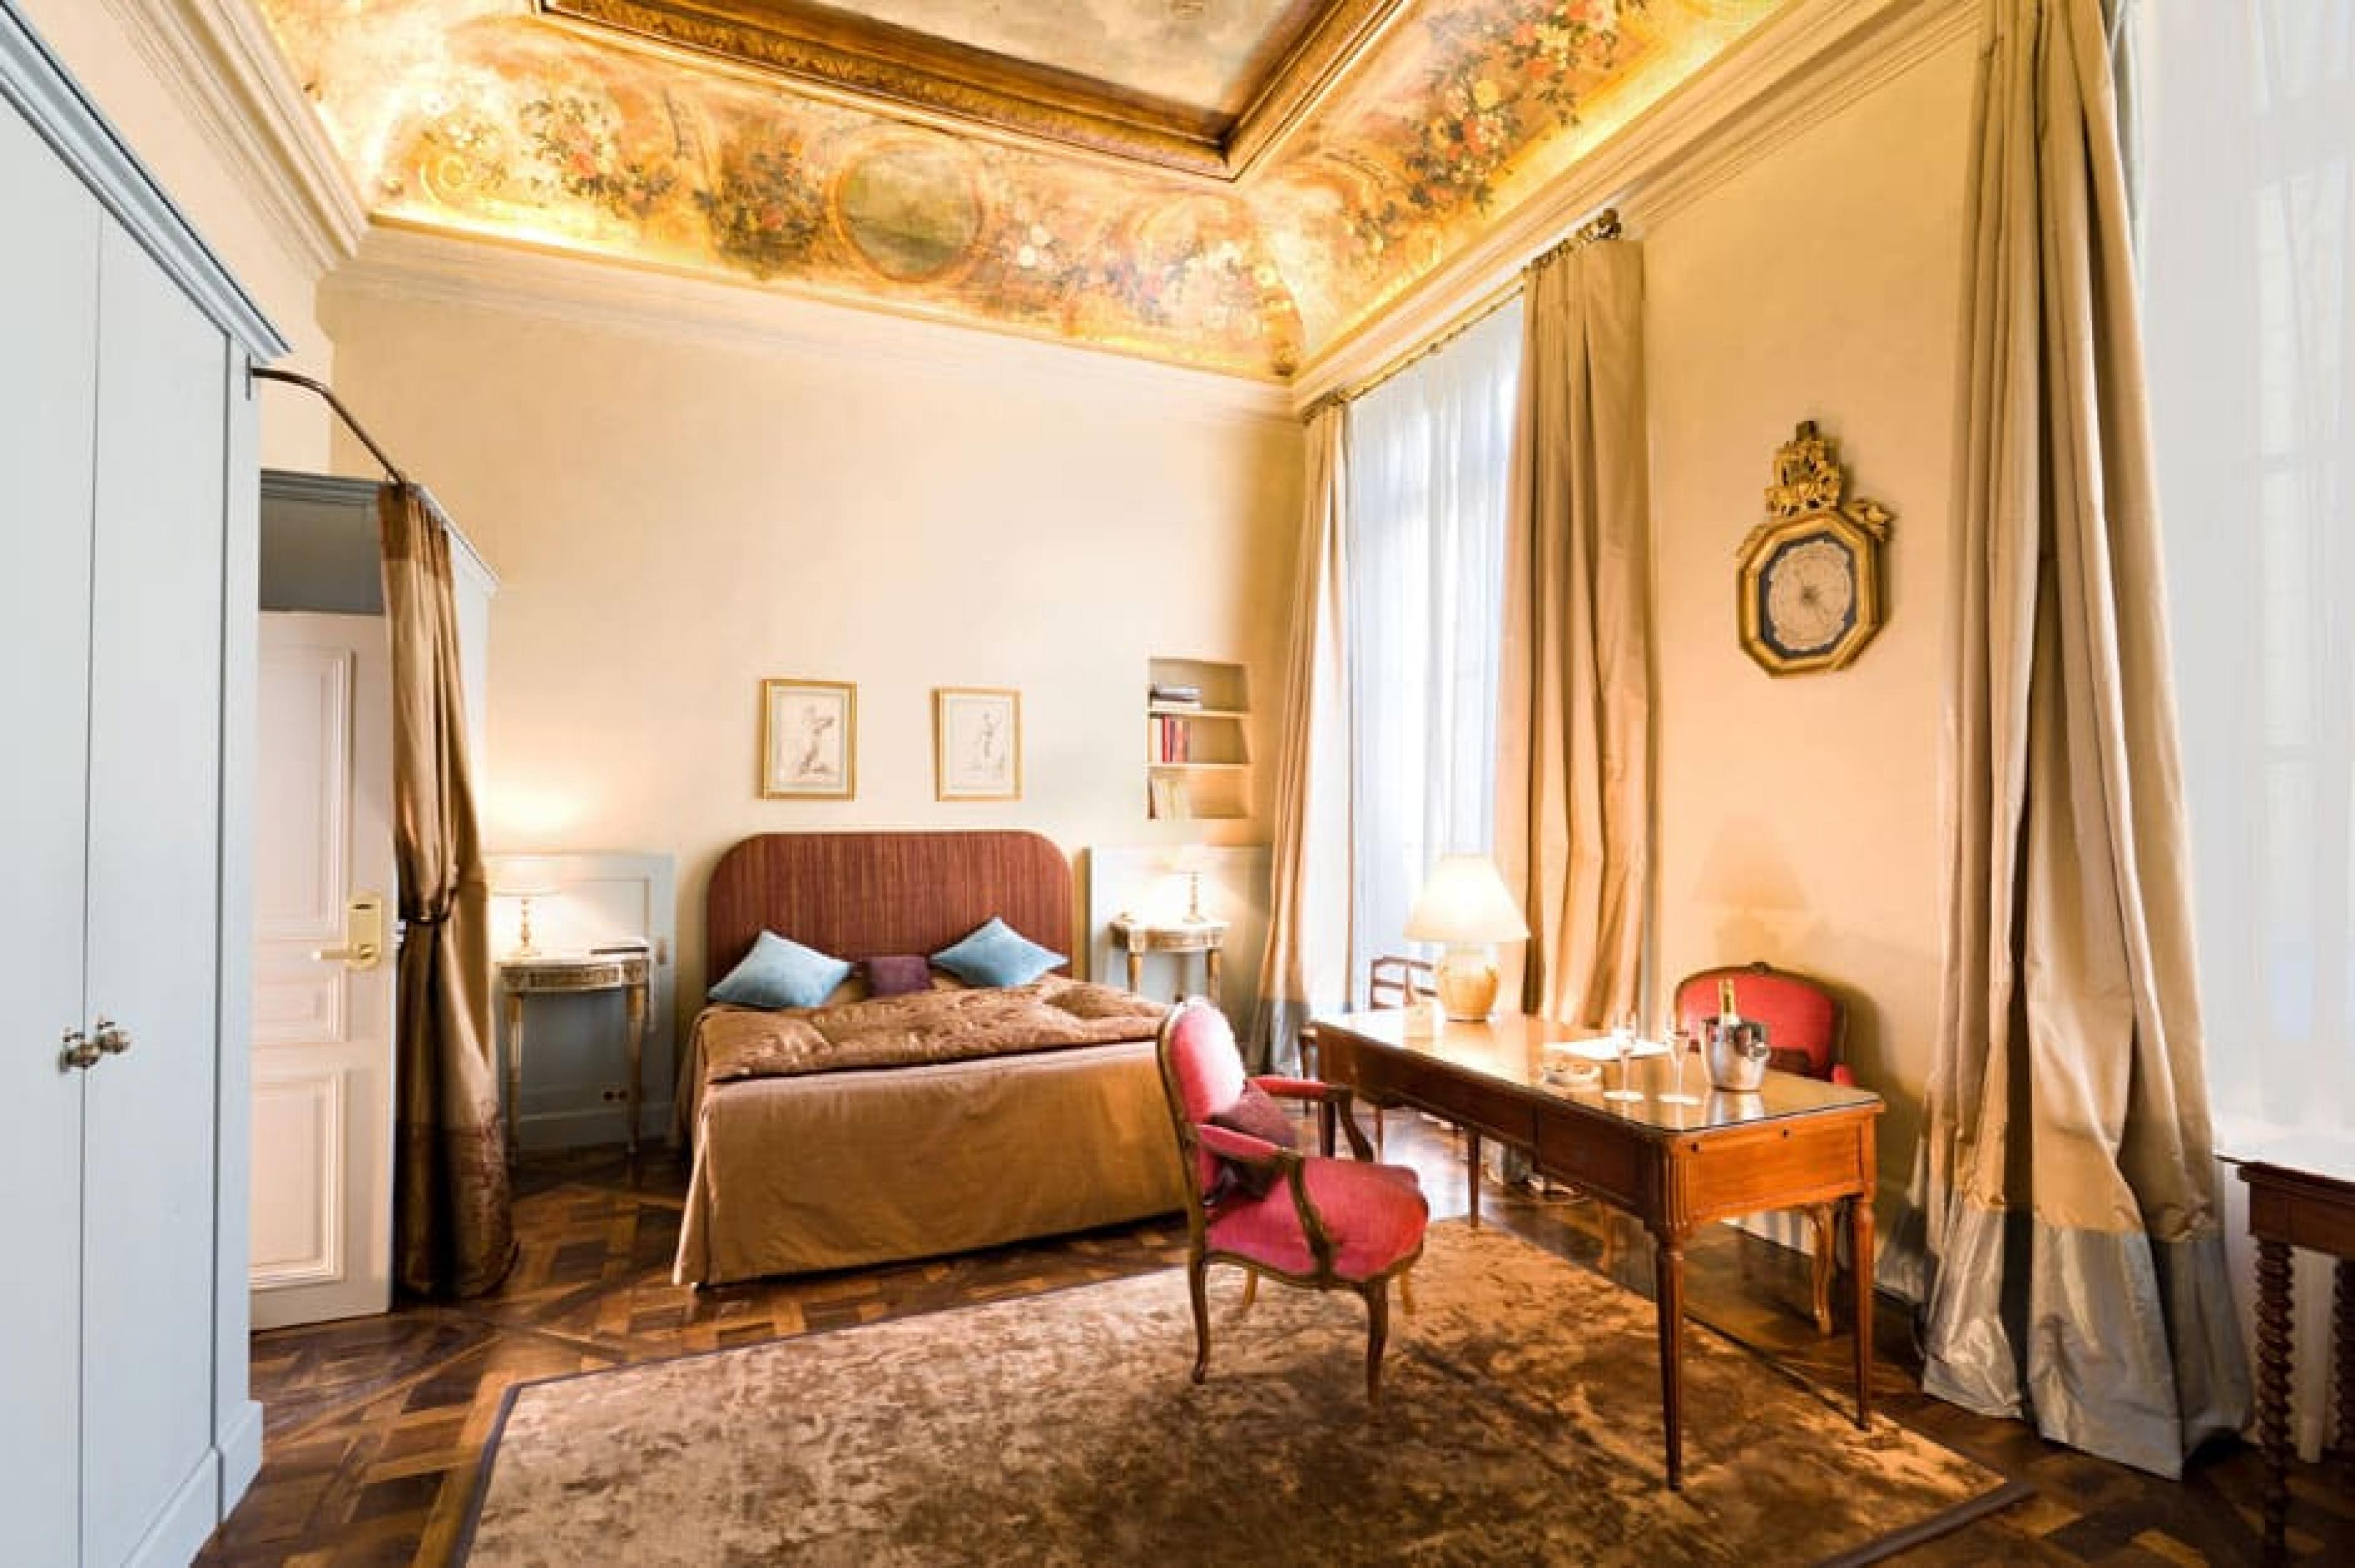 Suite at Hotel des Saints Peres, Paris, France